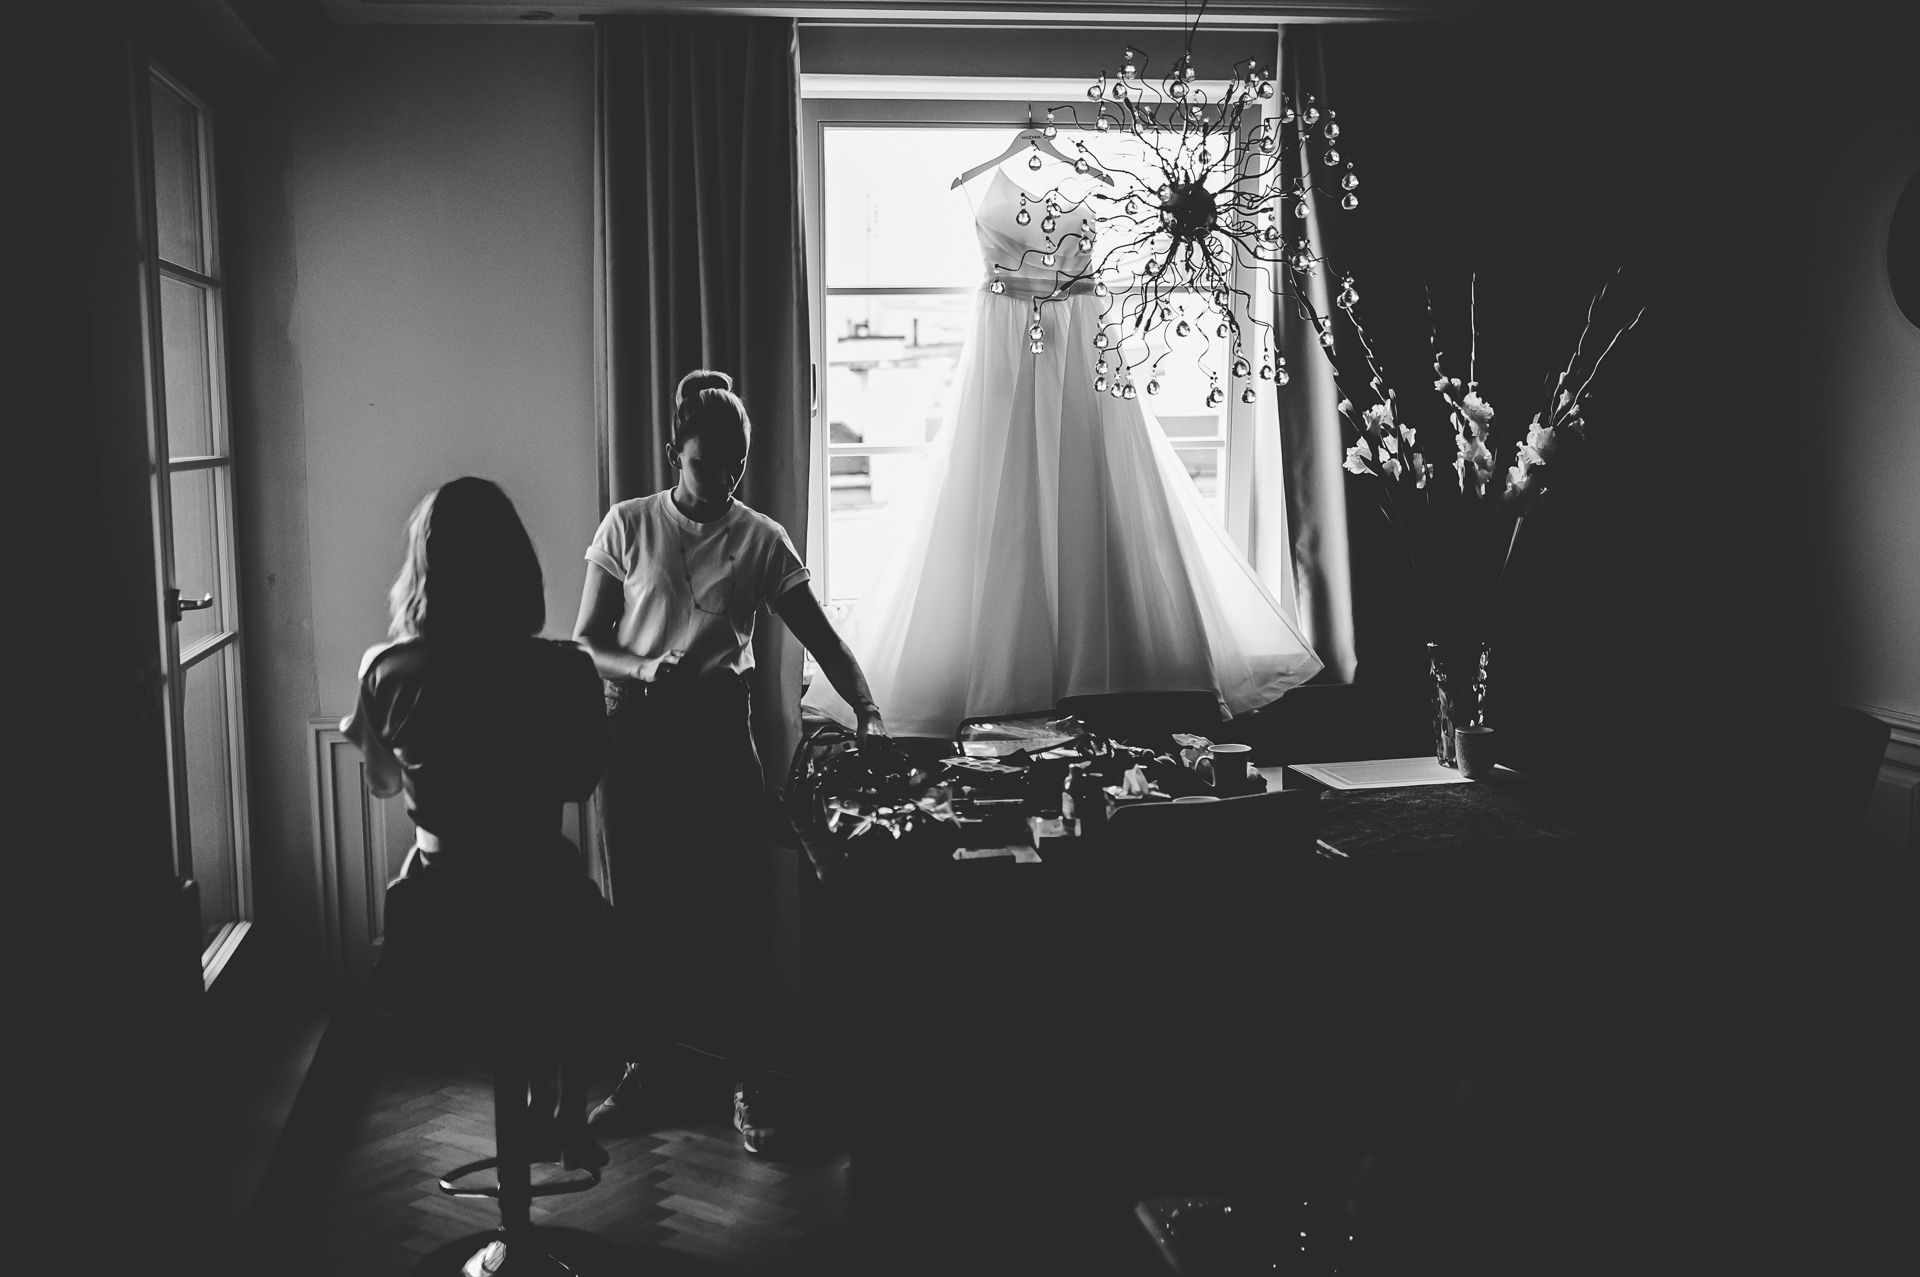 Fotograf na ślubie i weselu.